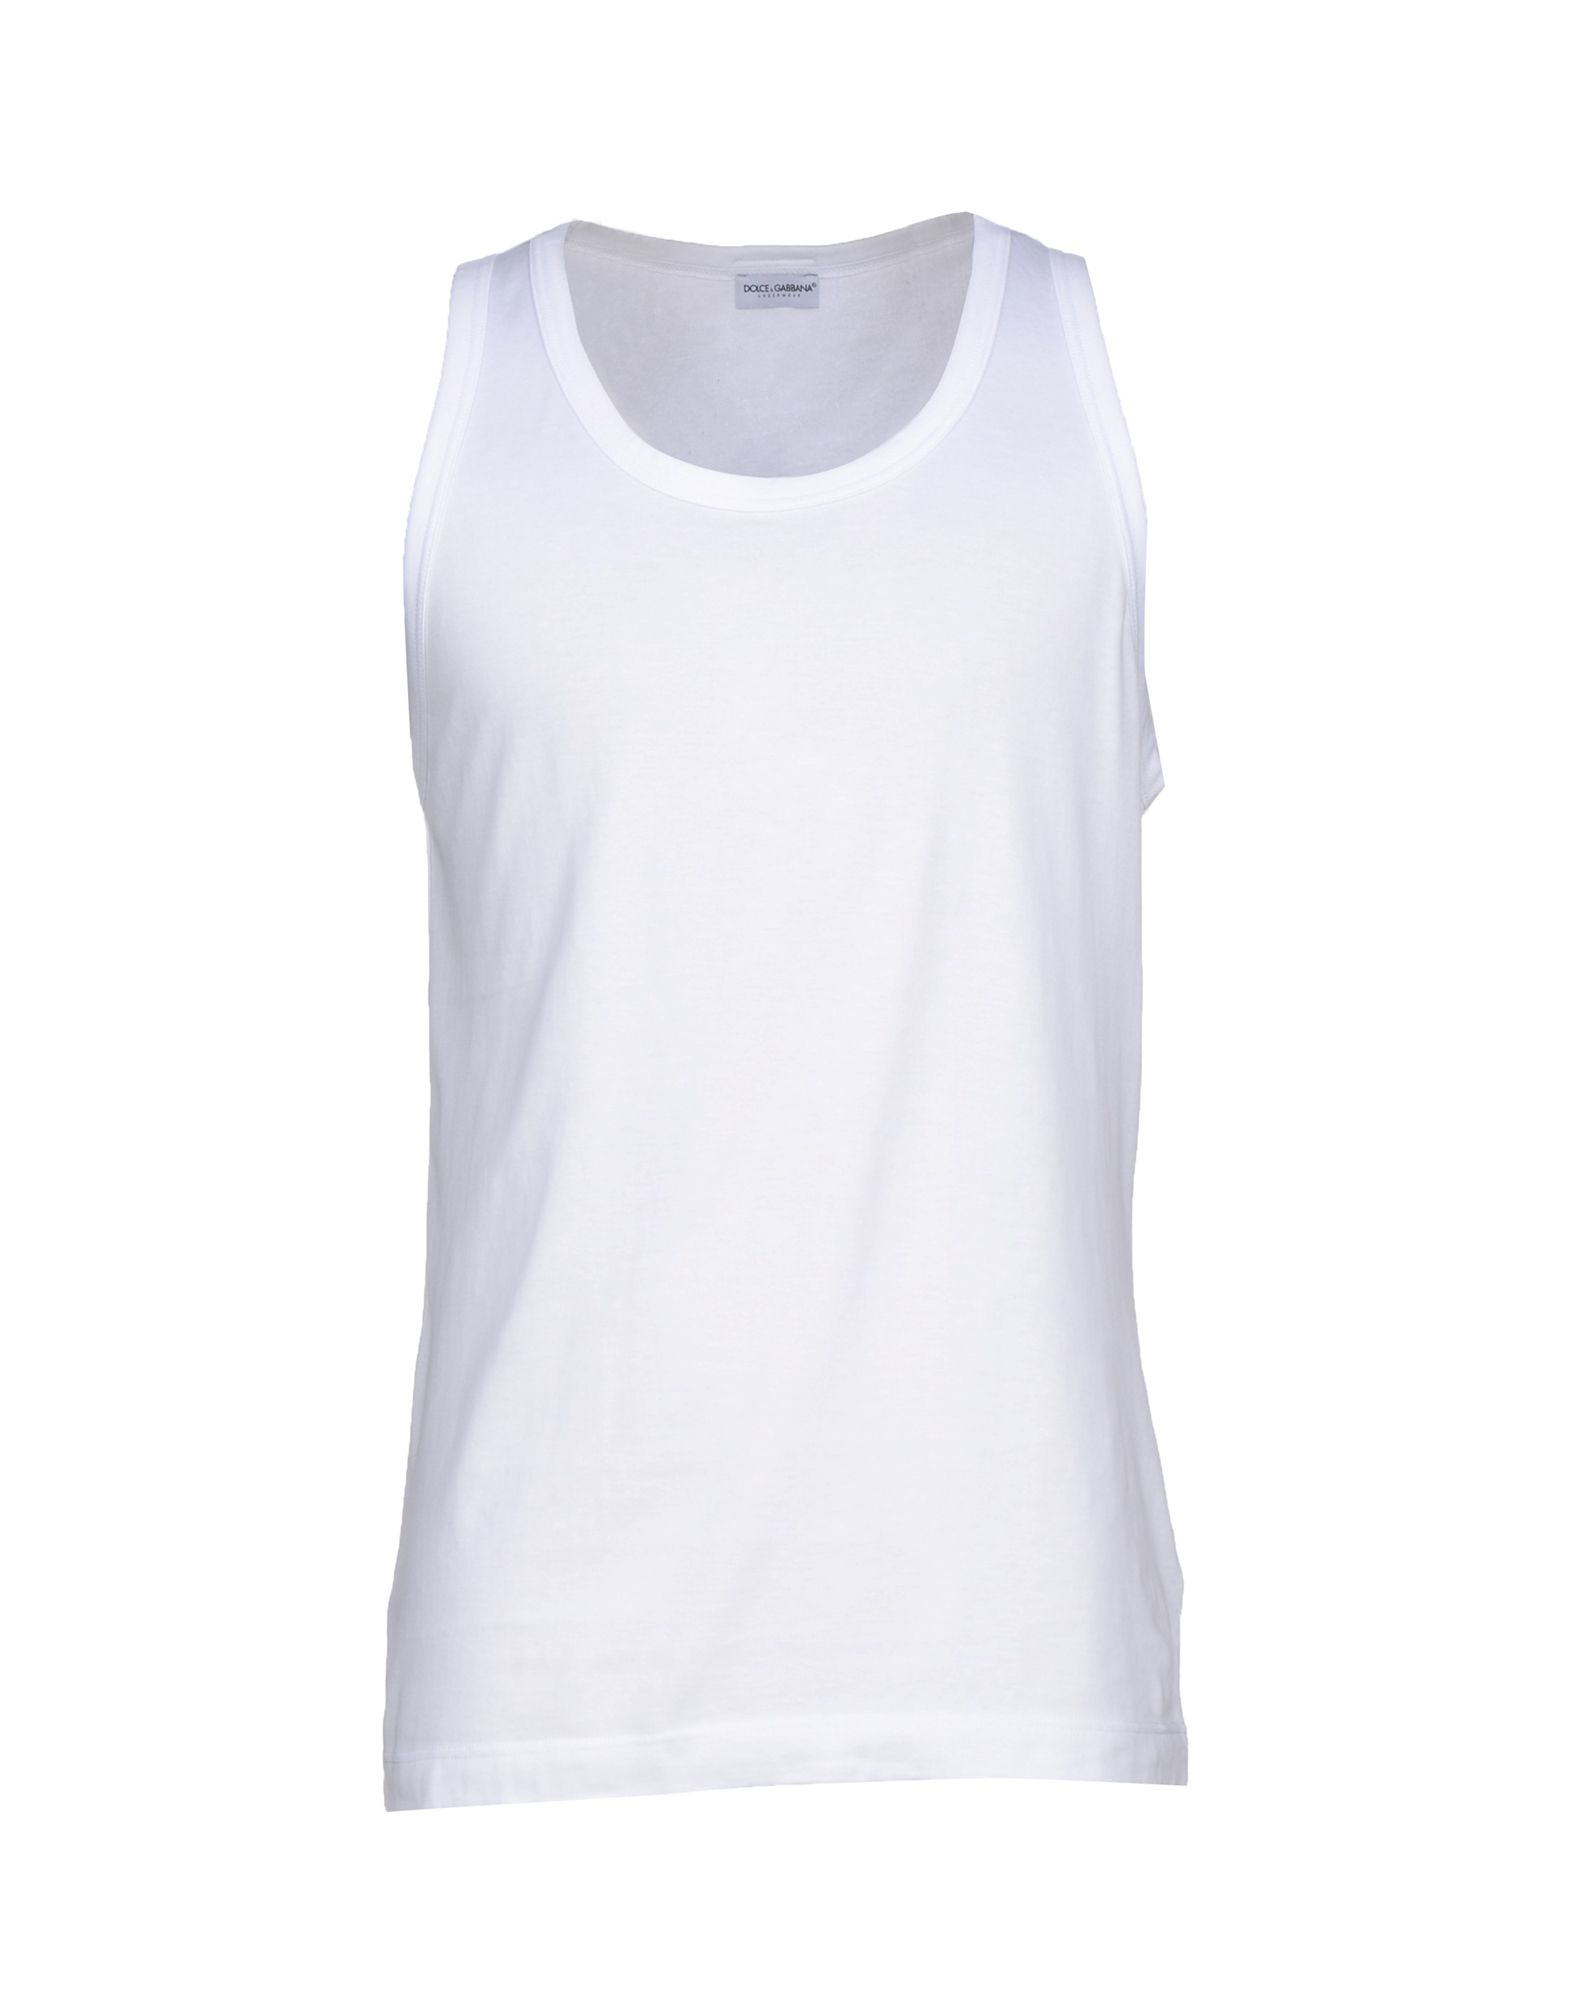 Lyst - Dolce & Gabbana Sleeveless Undershirt in White for Men